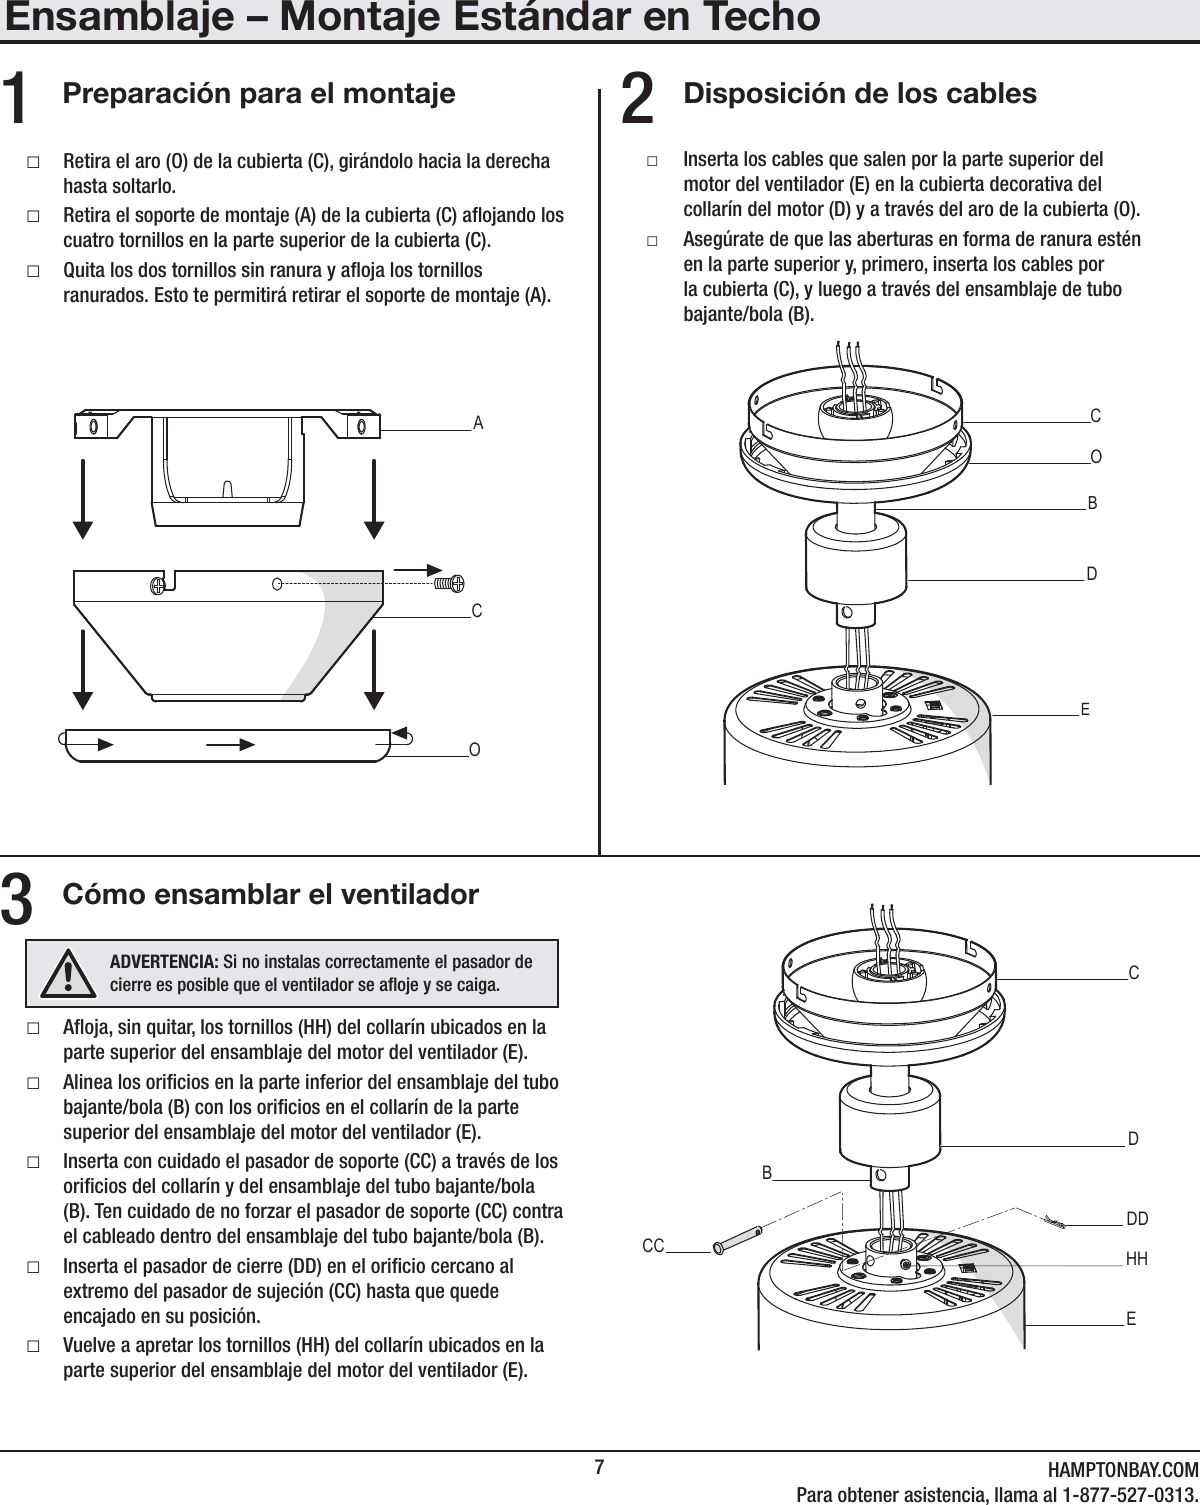 7HAMPTONBAY.COMPara obtener asistencia, llama al 1-877-527-0313.Ensamblaje – Montaje Estándar en TechoDisposición de los cablesCómo ensamblar el ventiladorPreparación para el montaje □Aoja, sin quitar, los tornillos (HH) del collarín ubicados en la parte superior del ensamblaje del motor del ventilador (E). □Alinea los oricios en la parte inferior del ensamblaje del tubo bajante/bola (B) con los oricios en el collarín de la parte superior del ensamblaje del motor del ventilador (E). □Inserta con cuidado el pasador de soporte (CC) a través de los oricios del collarín y del ensamblaje del tubo bajante/bola (B). Ten cuidado de no forzar el pasador de soporte (CC) contra el cableado dentro del ensamblaje del tubo bajante/bola (B). □Inserta el pasador de cierre (DD) en el oricio cercano al extremo del pasador de sujeción (CC) hasta que quede encajado en su posición. □Vuelve a apretar los tornillos (HH) del collarín ubicados en la parte superior del ensamblaje del motor del ventilador (E). □Retira el aro (O) de la cubierta (C), girándolo hacia la derecha hasta soltarlo. □Retira el soporte de montaje (A) de la cubierta (C) aojando los cuatro tornillos en la parte superior de la cubierta (C). □Quita los dos tornillos sin ranura y aoja los tornillos ranurados. Esto te permitirá retirar el soporte de montaje (A). □Inserta los cables que salen por la parte superior del motor del ventilador (E) en la cubierta decorativa del collarín del motor (D) y a través del aro de la cubierta (O). □Asegúrate de que las aberturas en forma de ranura estén en la parte superior y, primero, inserta los cables por la cubierta (C), y luego a través del ensamblaje de tubo bajante/bola (B).231   CAOEDCBOBCCDDDECBHHADVERTENCIA: Si no instalas correctamente el pasador de cierre es posible que el ventilador se aoje y se caiga.